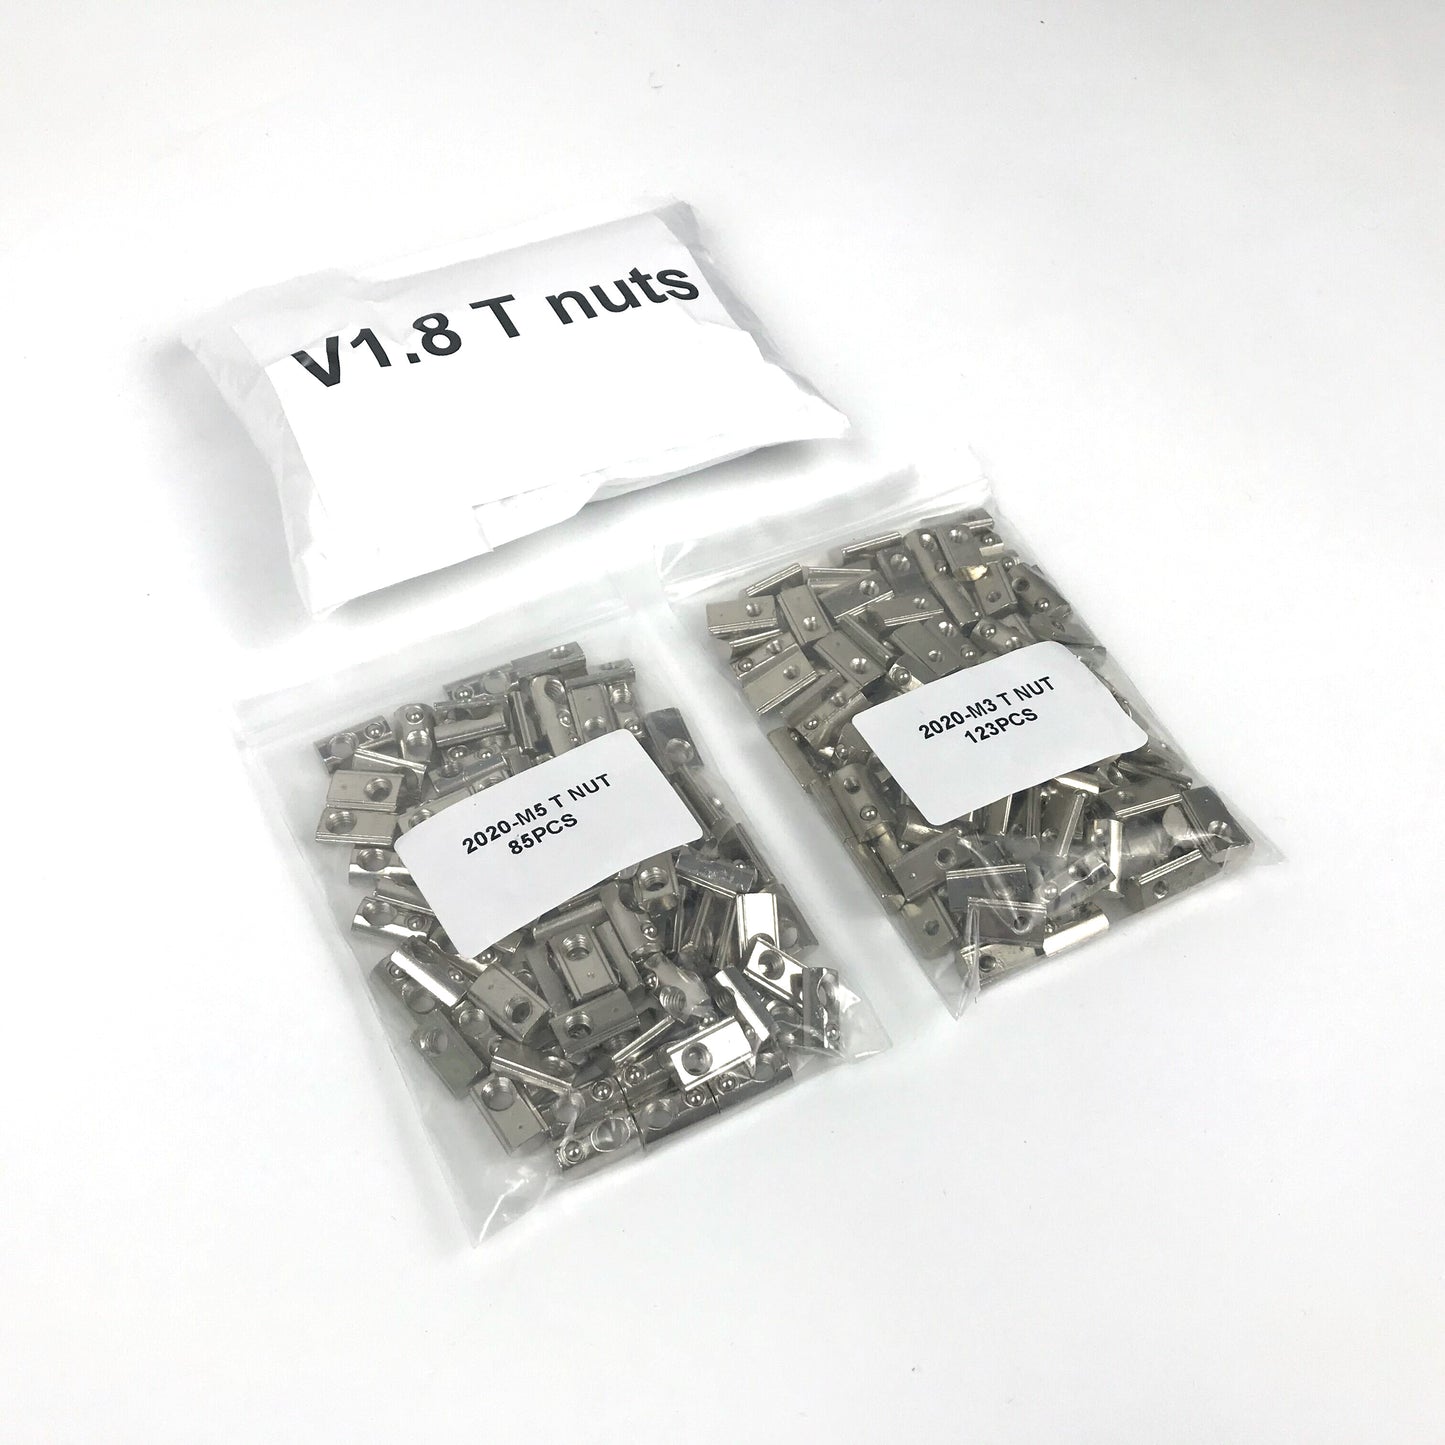 LDO Voron 1.8 T-Nuts